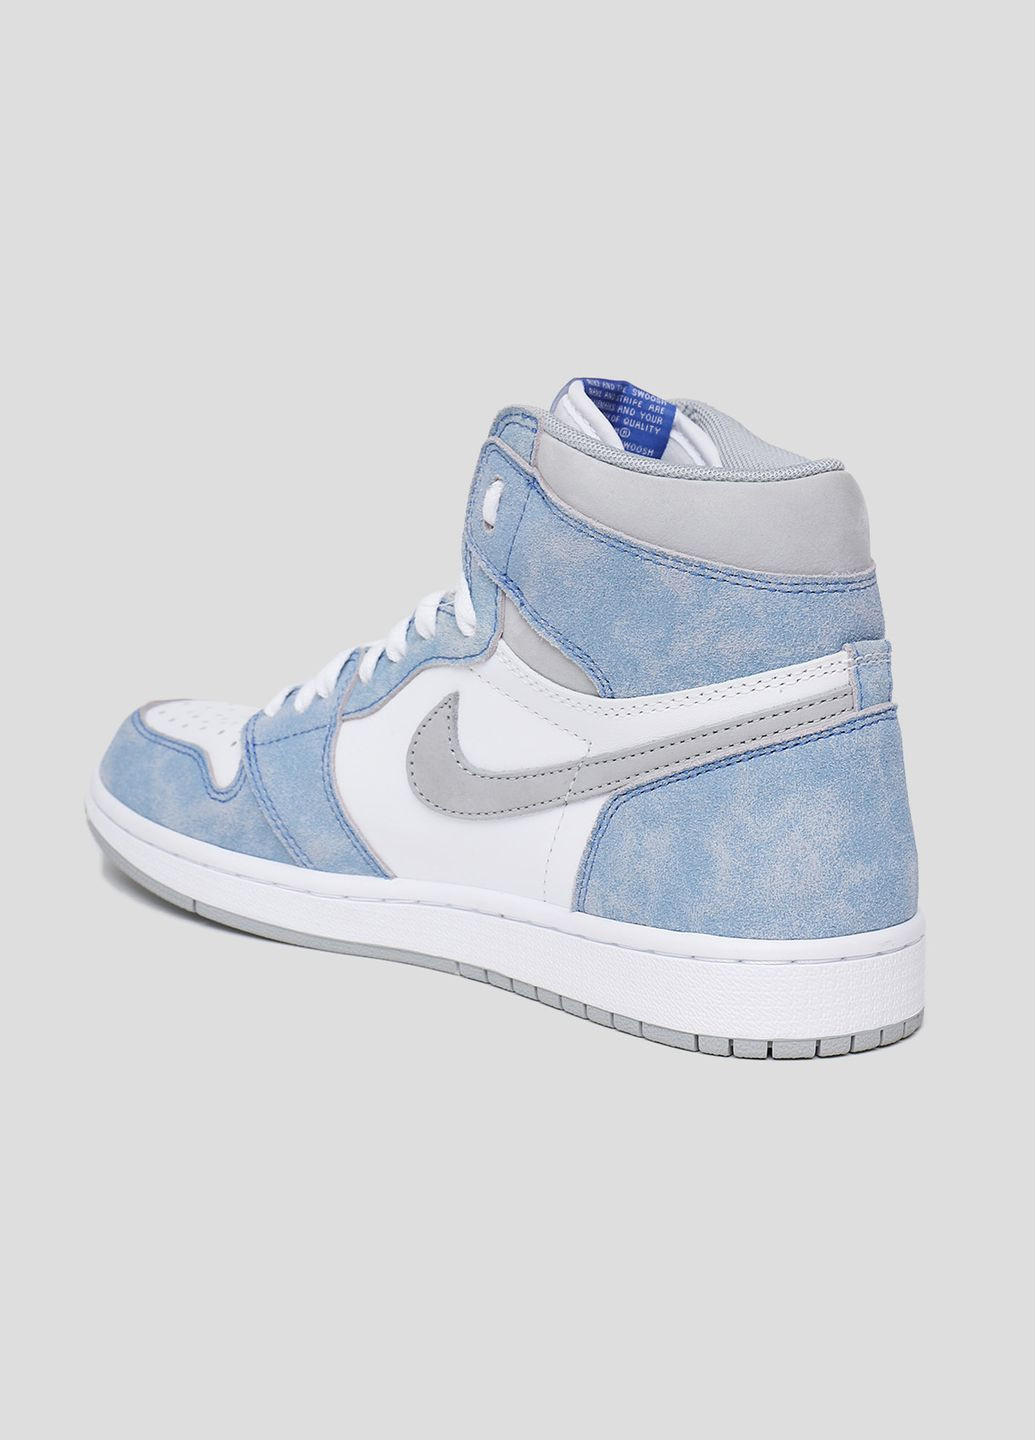 Белые бело-голубые кожаные хайтопы air jordan 1 retro high Nike